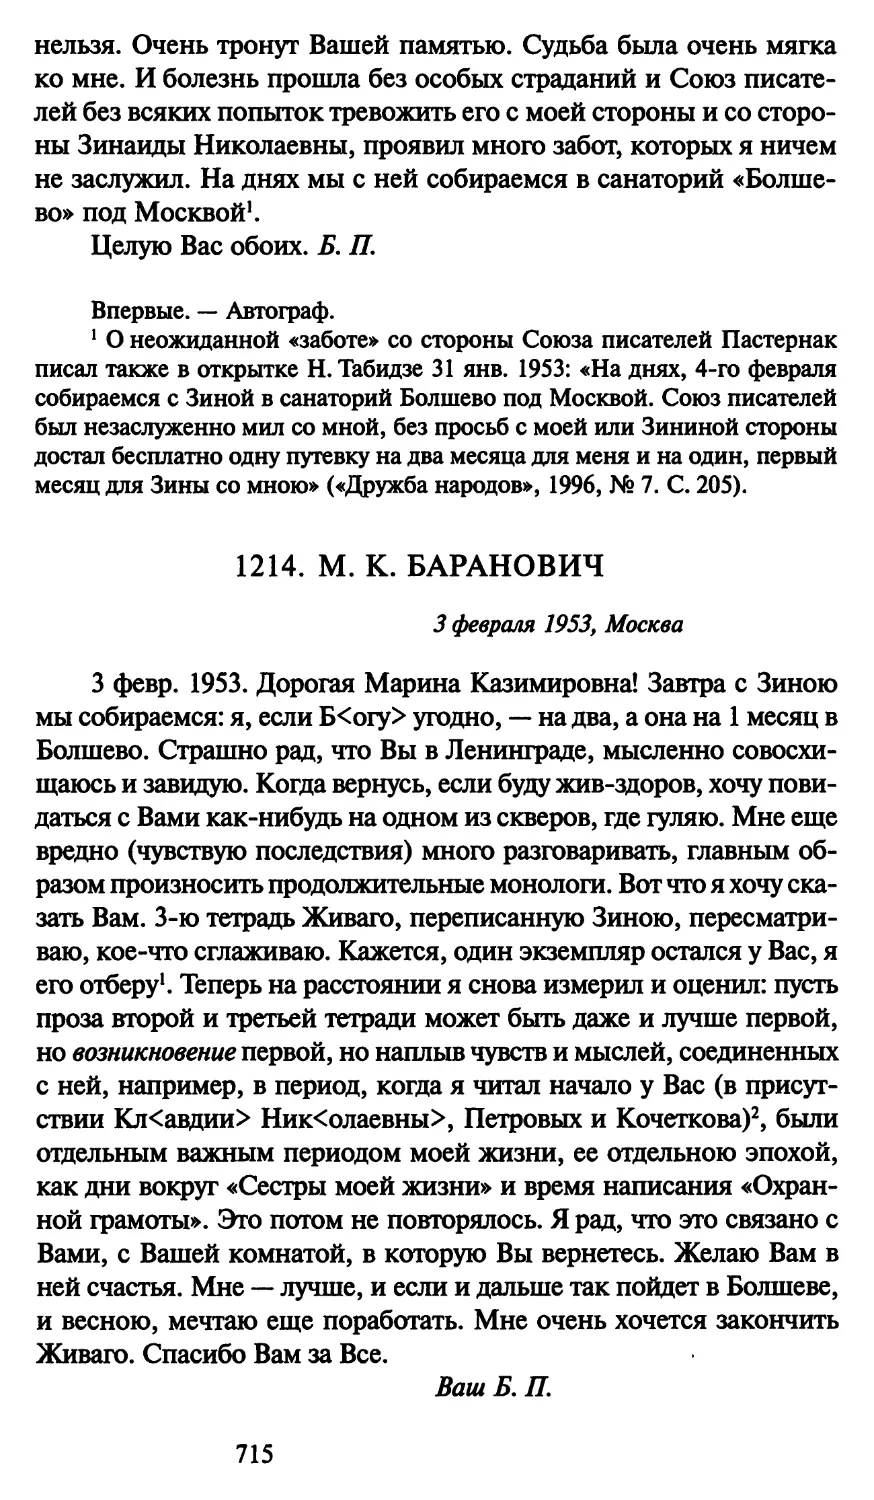 1214. М. К. Баранович 3 февраля 1953